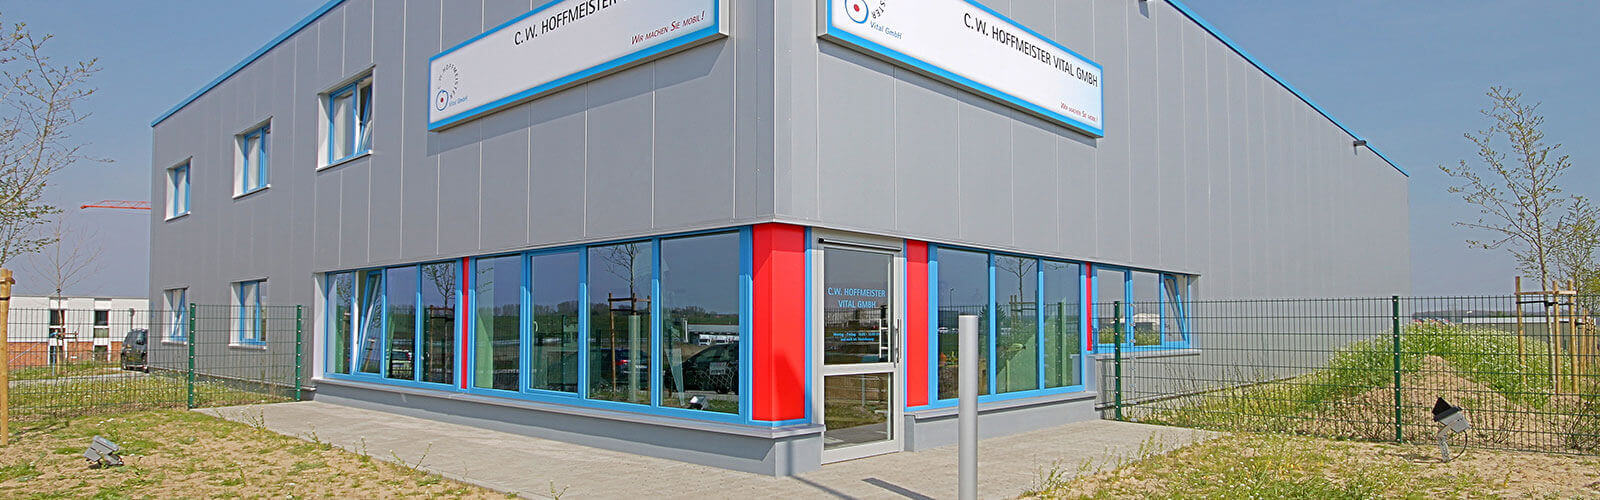 Außenansicht des neuen Betriebsgebäudes der Firma C. W. Hoffmeister VITAL GmbH